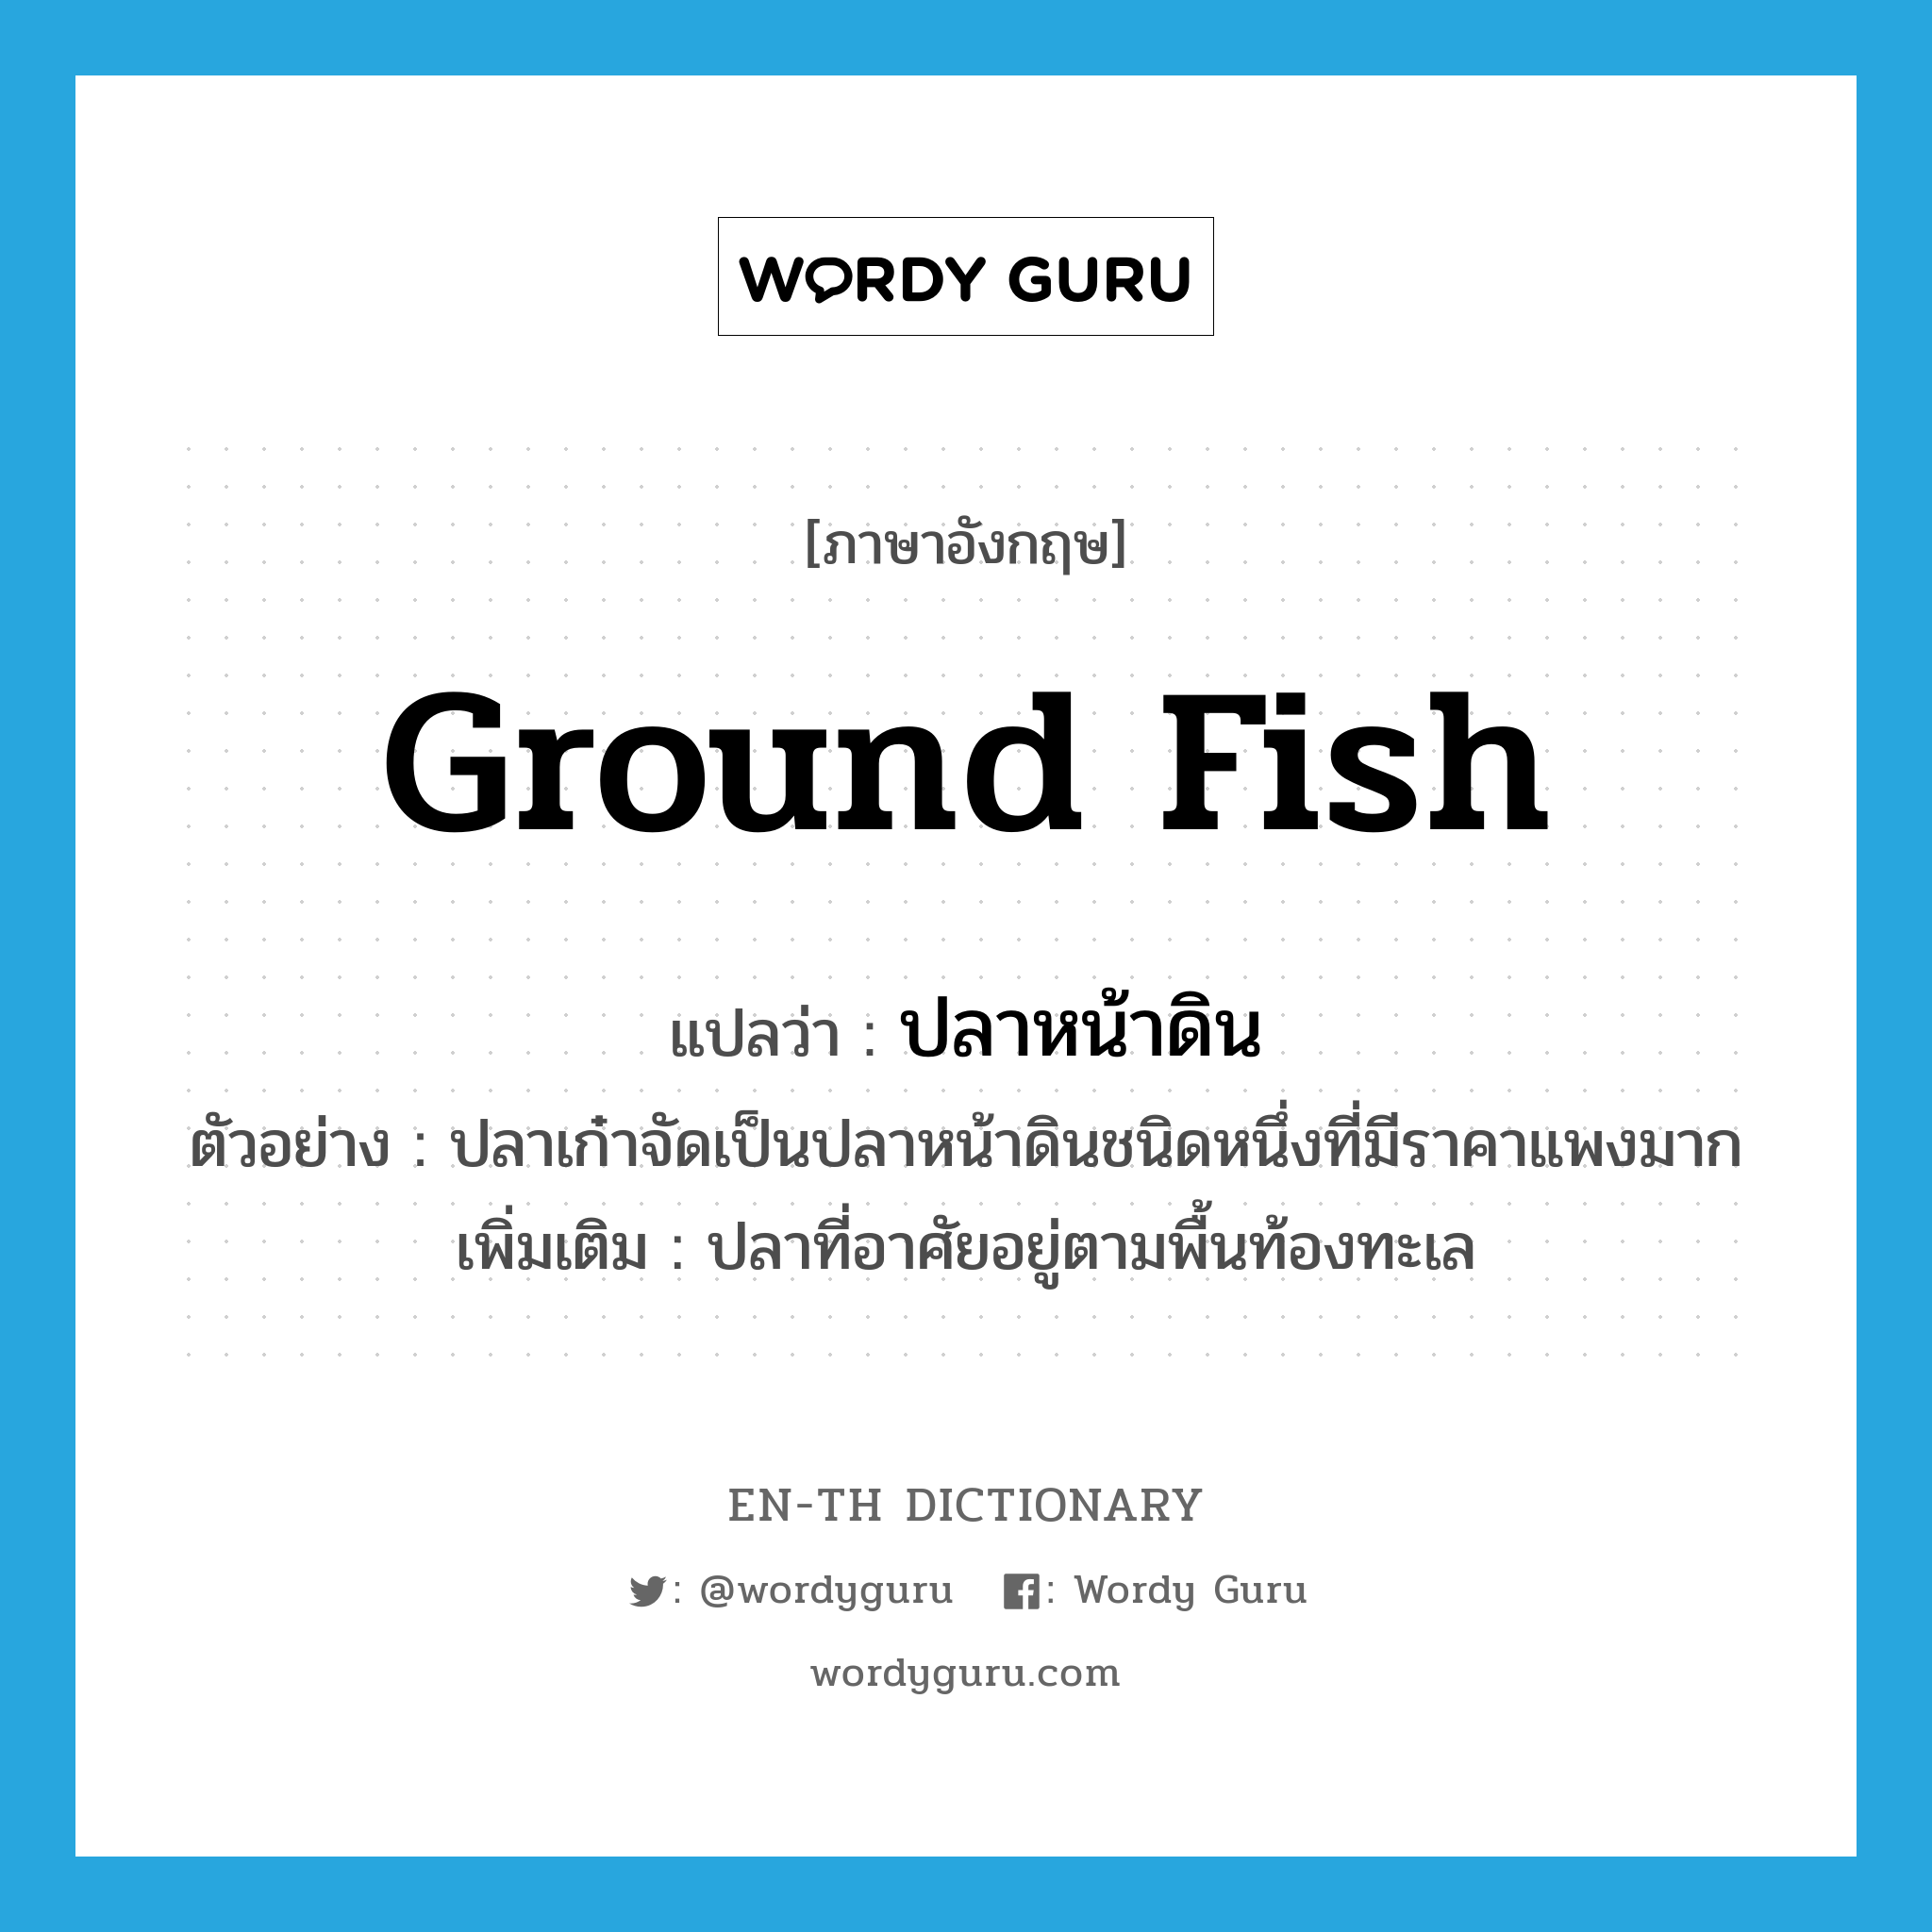 ground fish แปลว่า?, คำศัพท์ภาษาอังกฤษ ground fish แปลว่า ปลาหน้าดิน ประเภท N ตัวอย่าง ปลาเก๋าจัดเป็นปลาหน้าดินชนิดหนึ่งที่มีราคาแพงมาก เพิ่มเติม ปลาที่อาศัยอยู่ตามพื้นท้องทะเล หมวด N